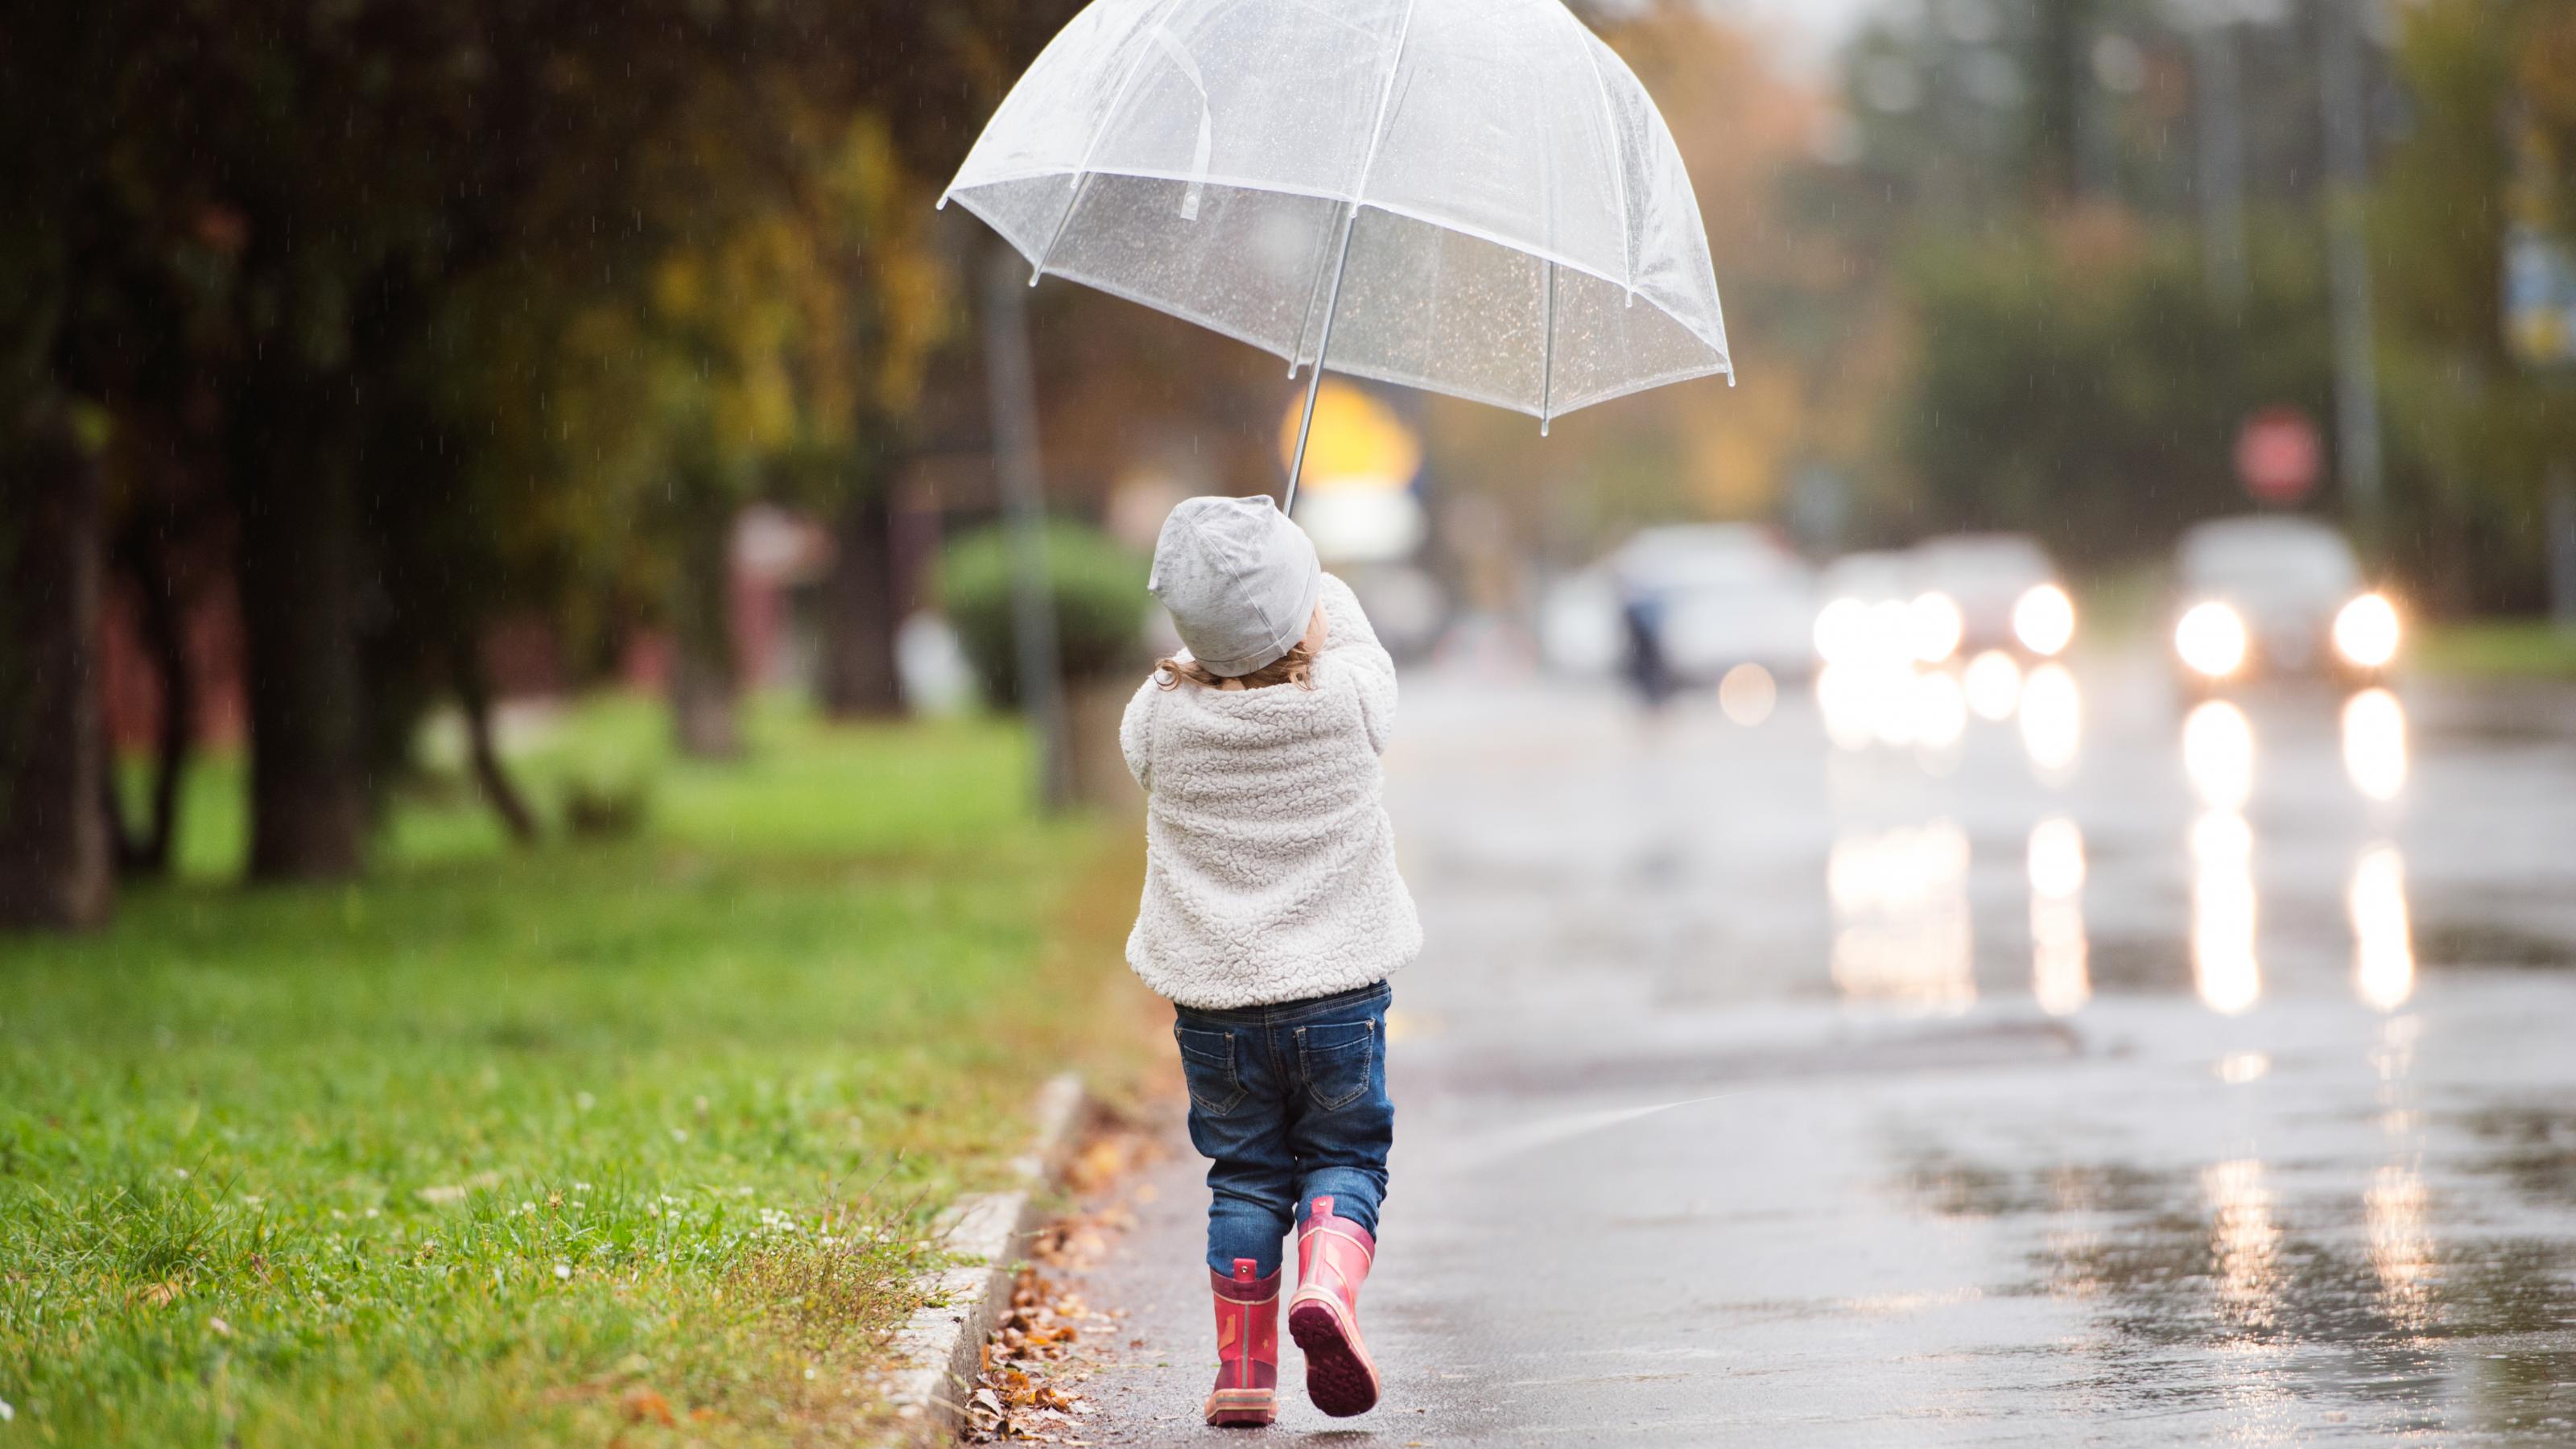 Man sieht ein kleines Mädchen von hinten auf der Straße entlanggehen. Sie hält einen Schirm in der Hand, die Straße ist nass, da es gerade geregnet hat.